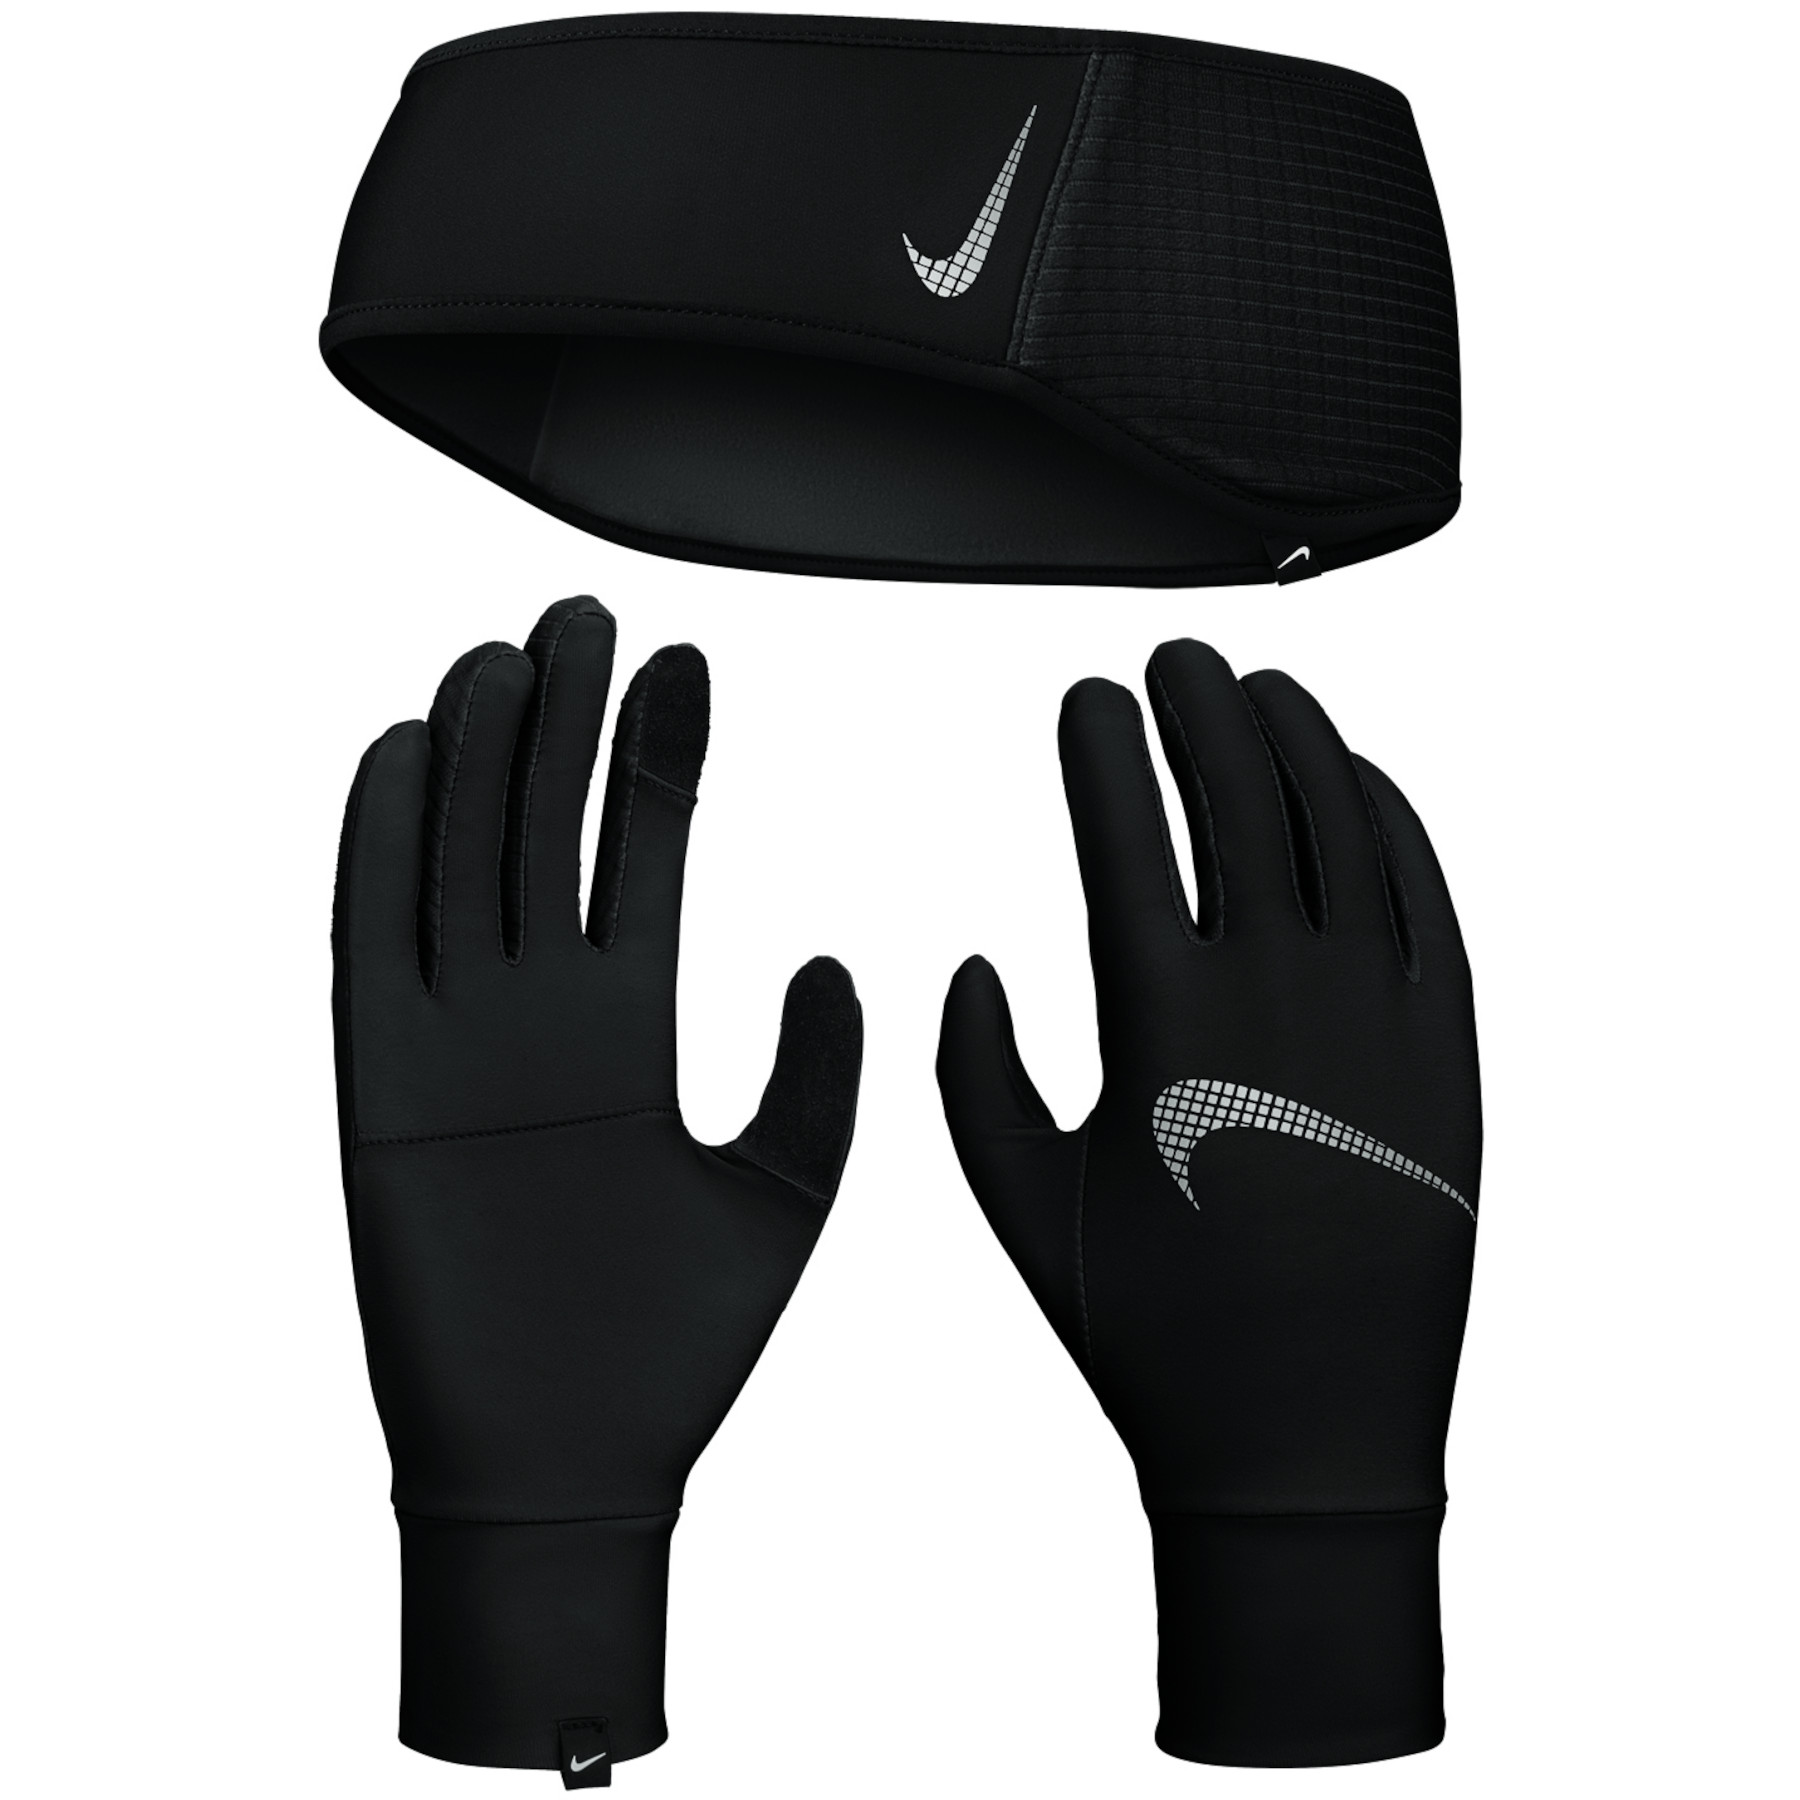 Produktbild von Nike Damen Essential Stirnband-/Handschuhe-Set - schwarz/schwarz/silber 082